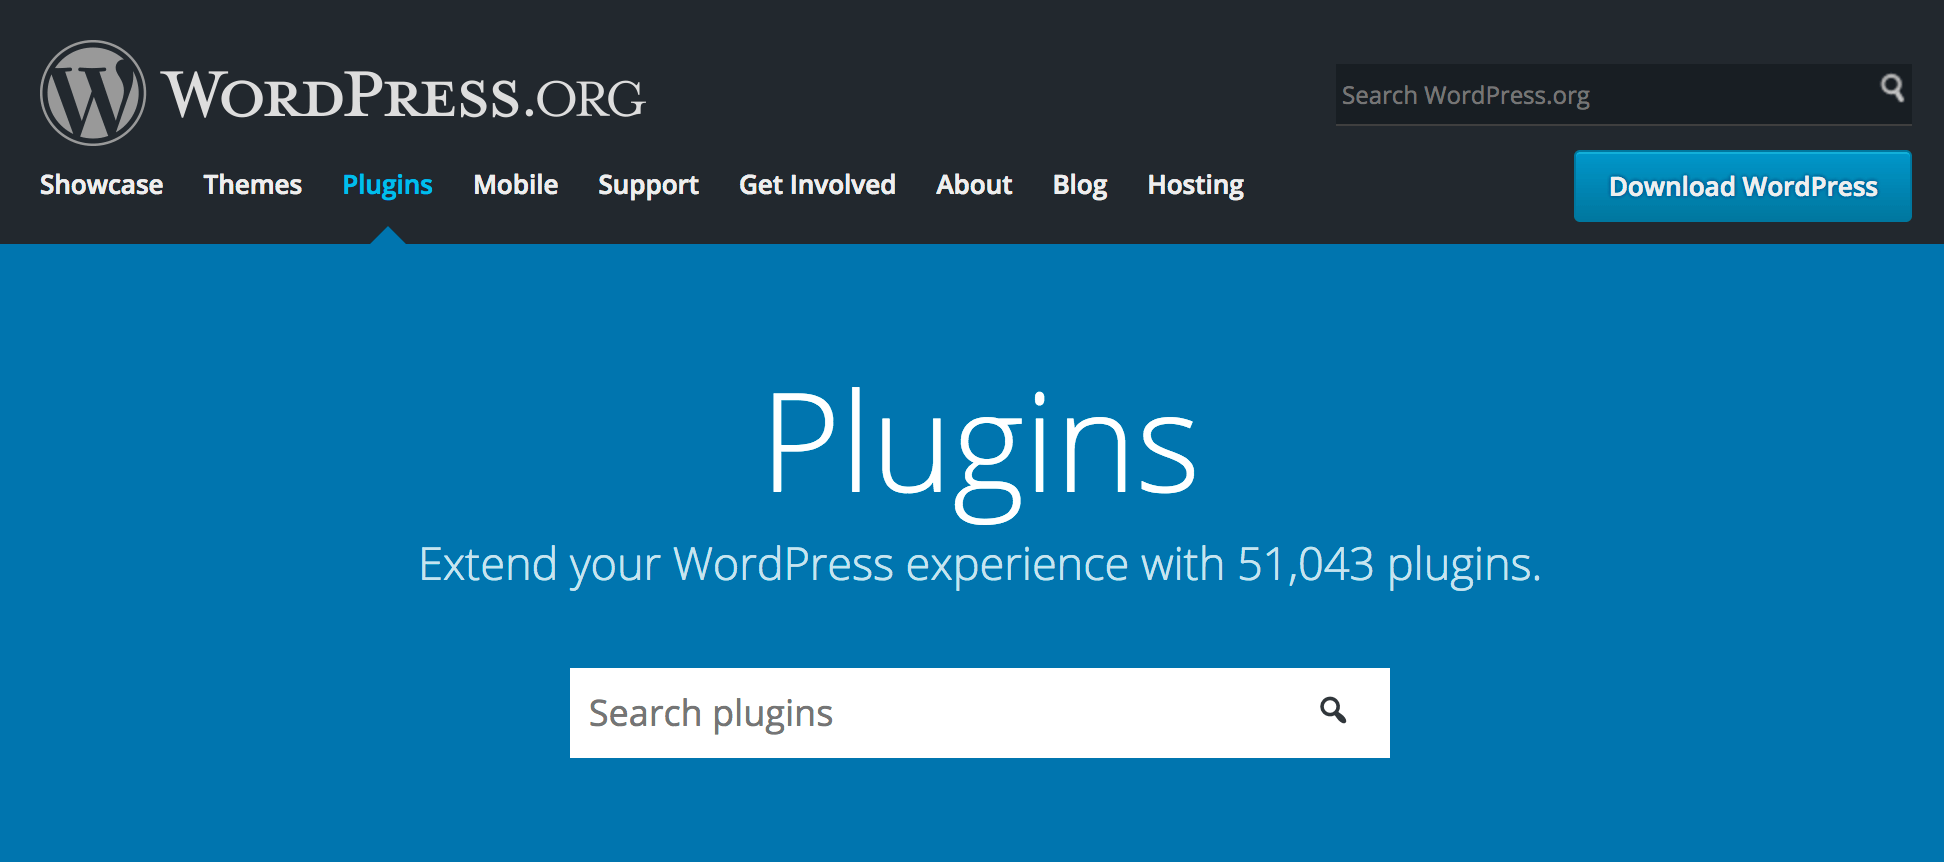 WordPress.org plugins homepage